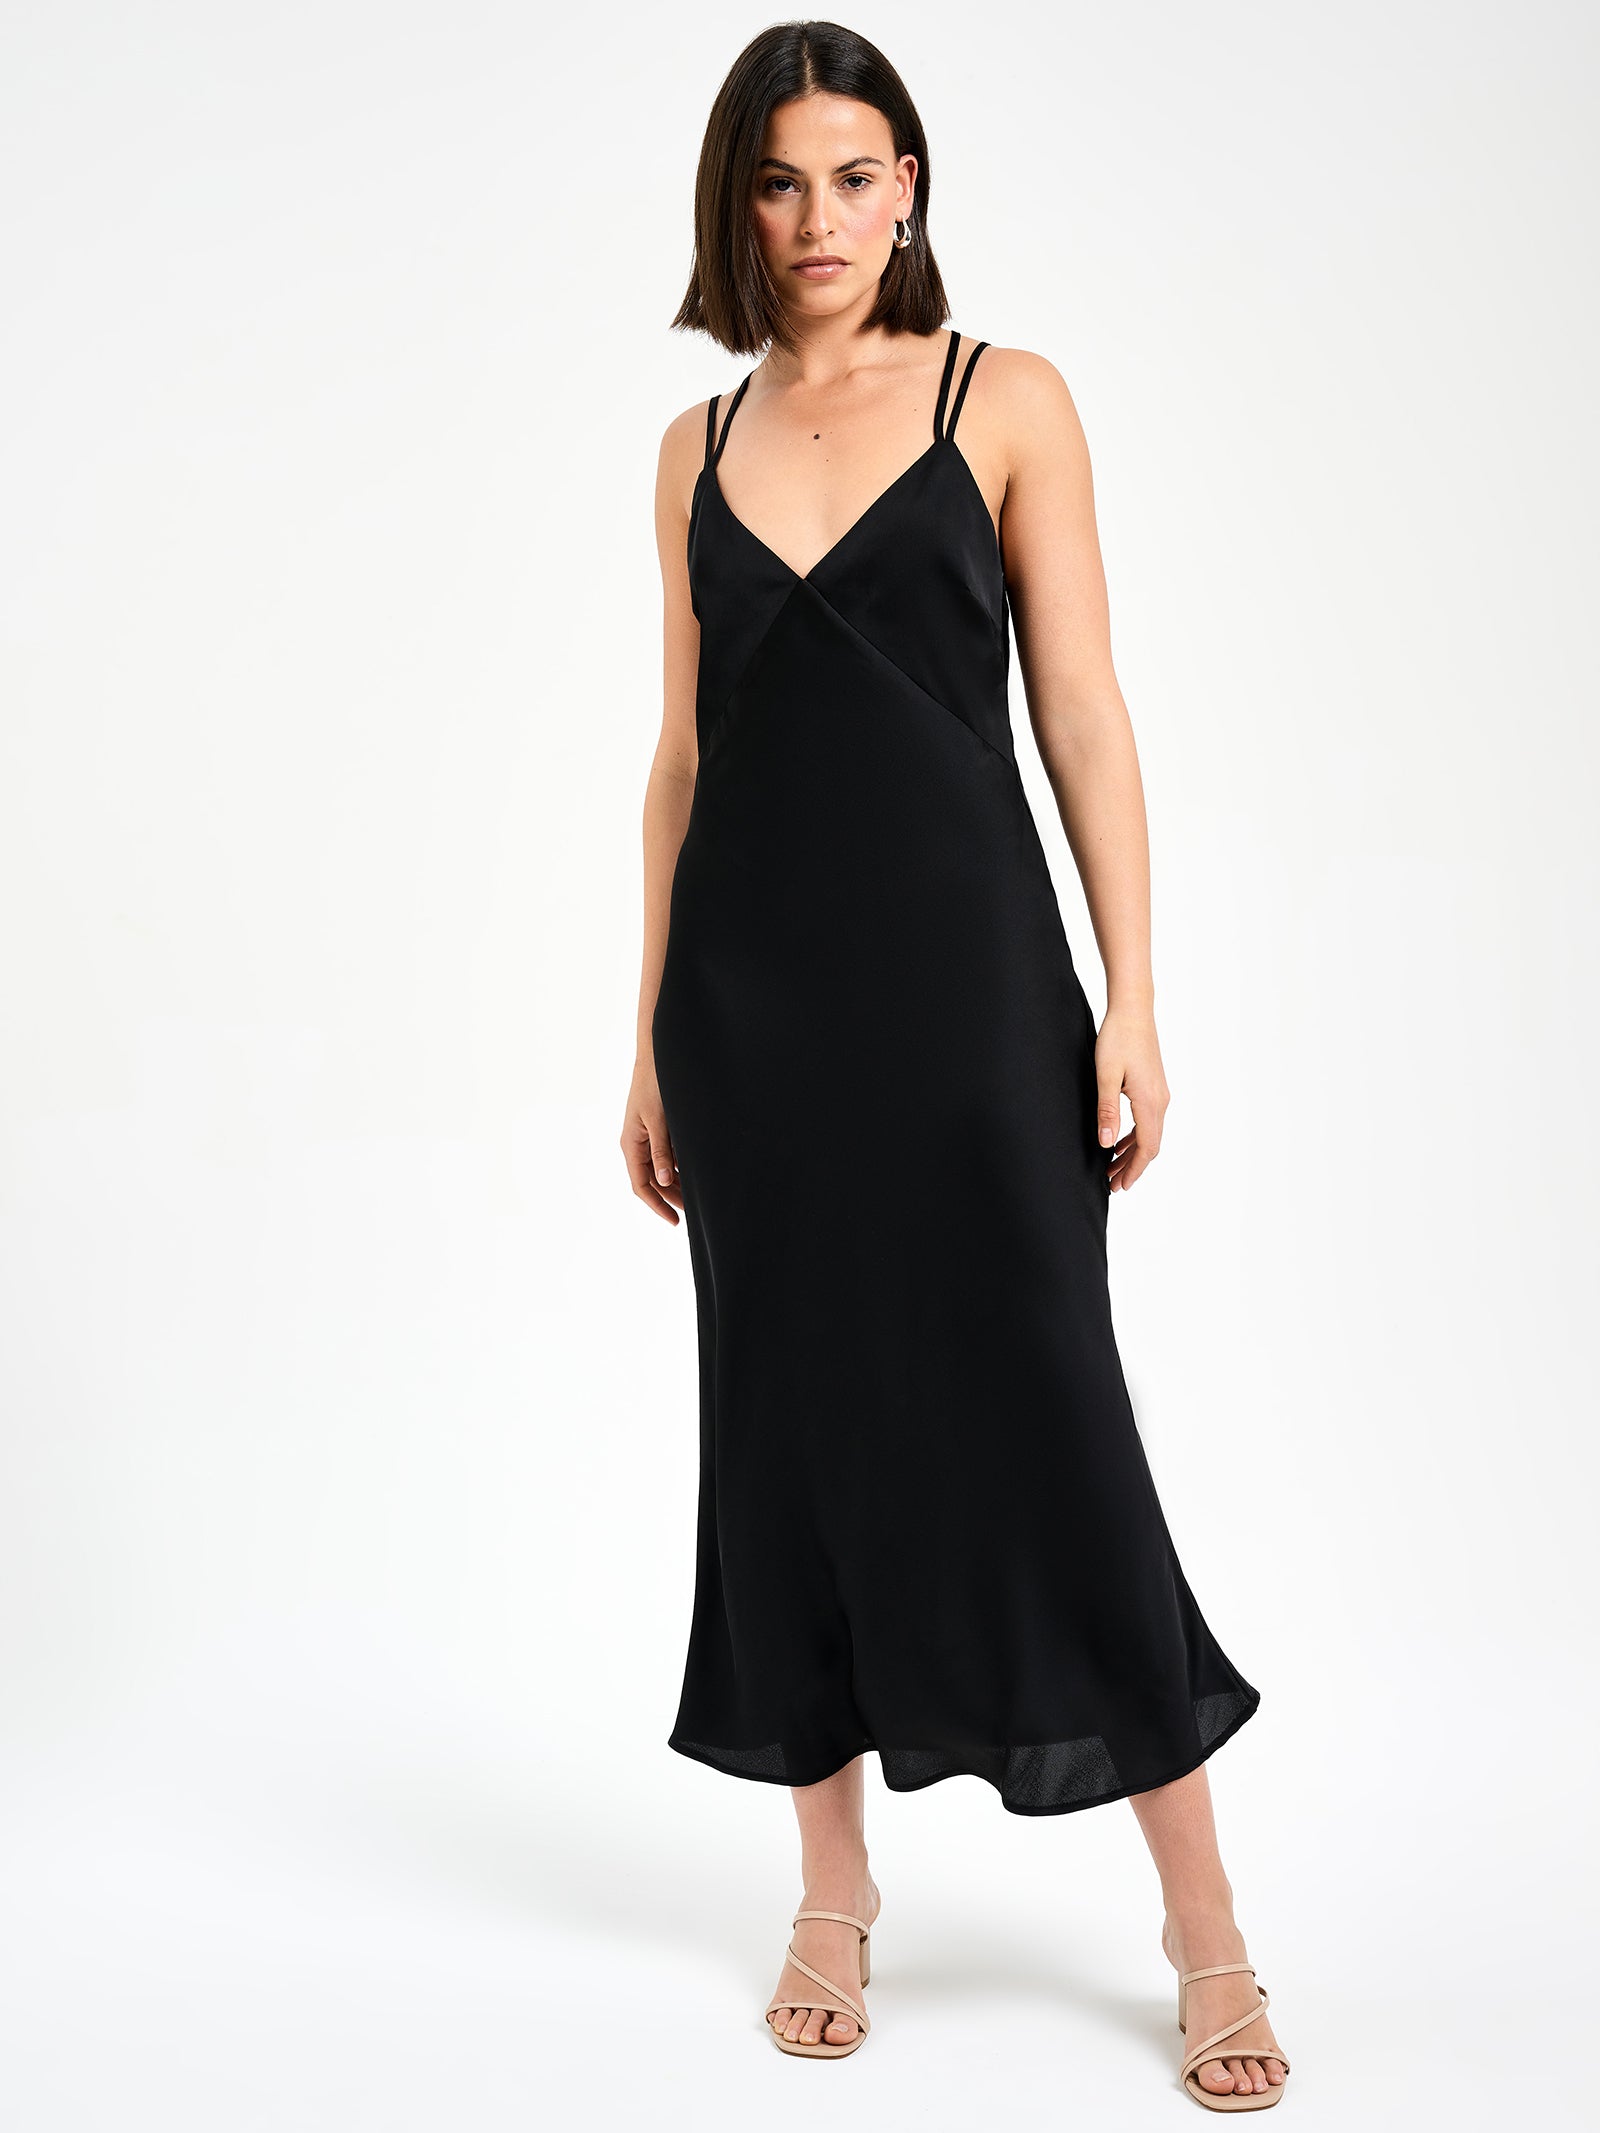 Celine Strappy Midi Dress in Black - Glue Store